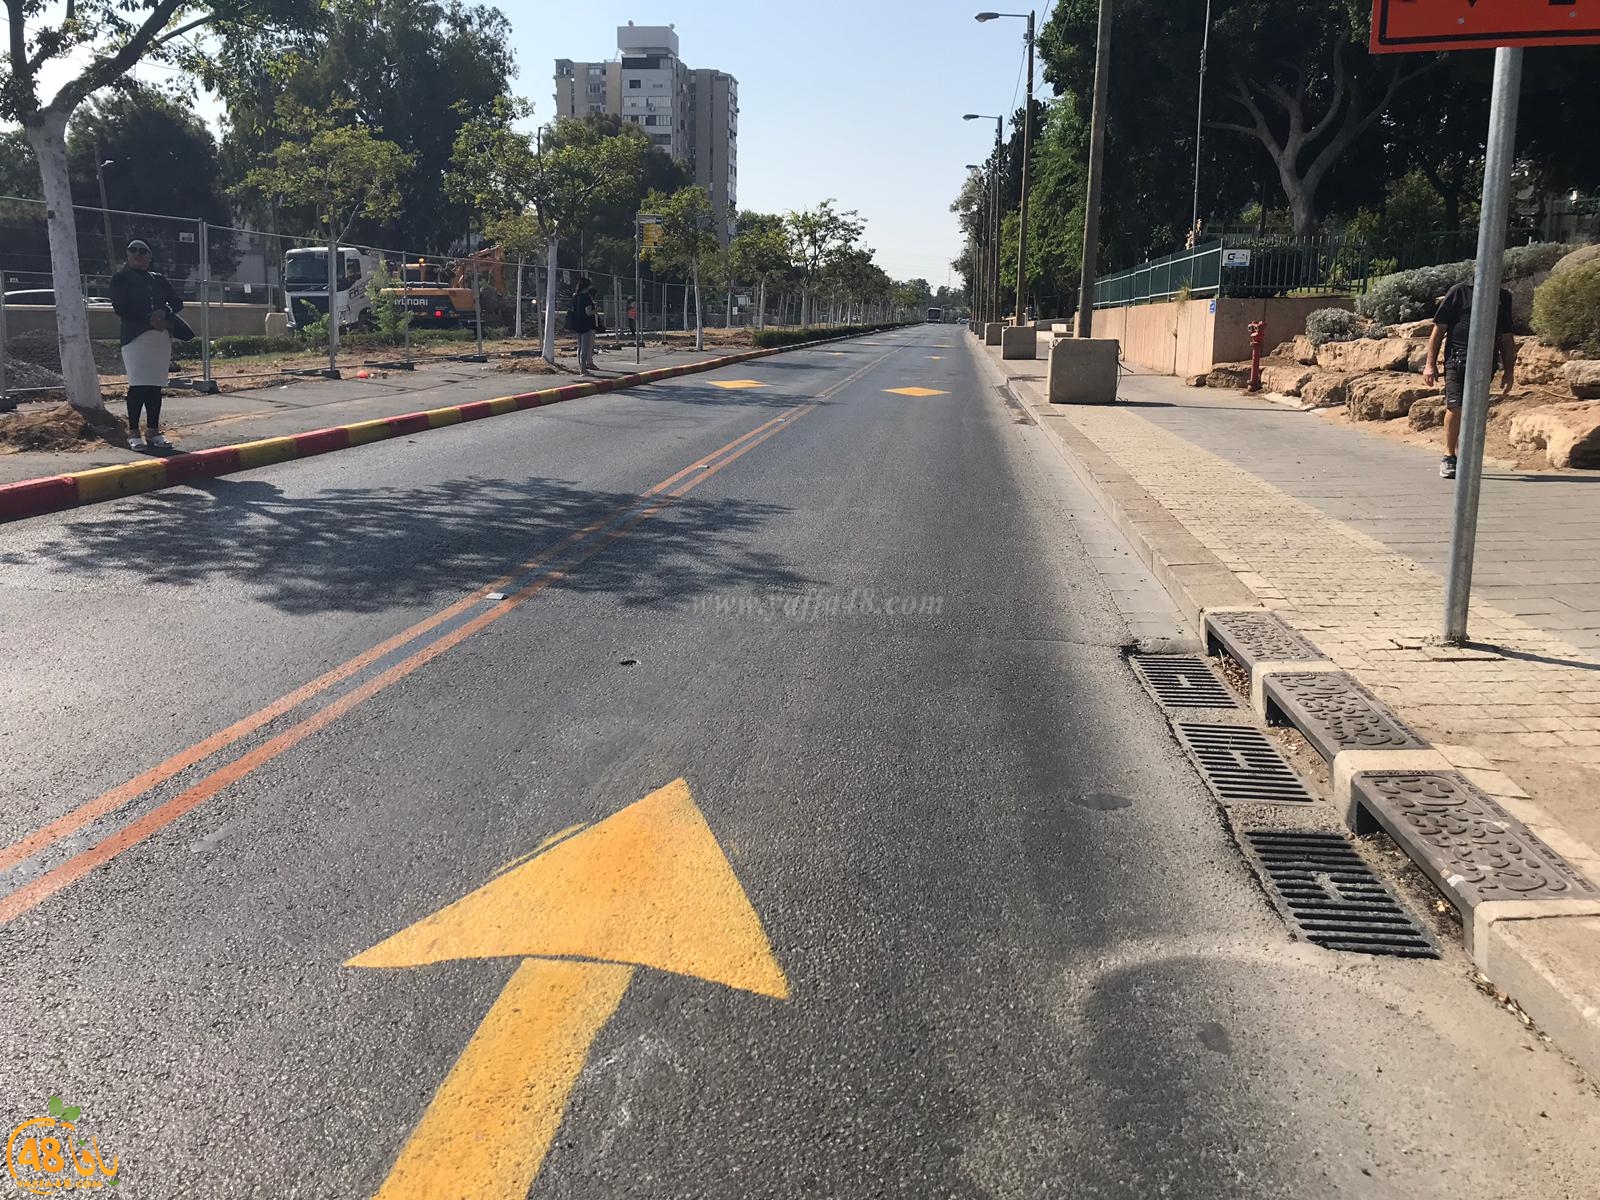 للأسبوع الثاني - اغلاق مقطع من شارع شديروت يروشلايم بيافا بسبب اعمال التطوير